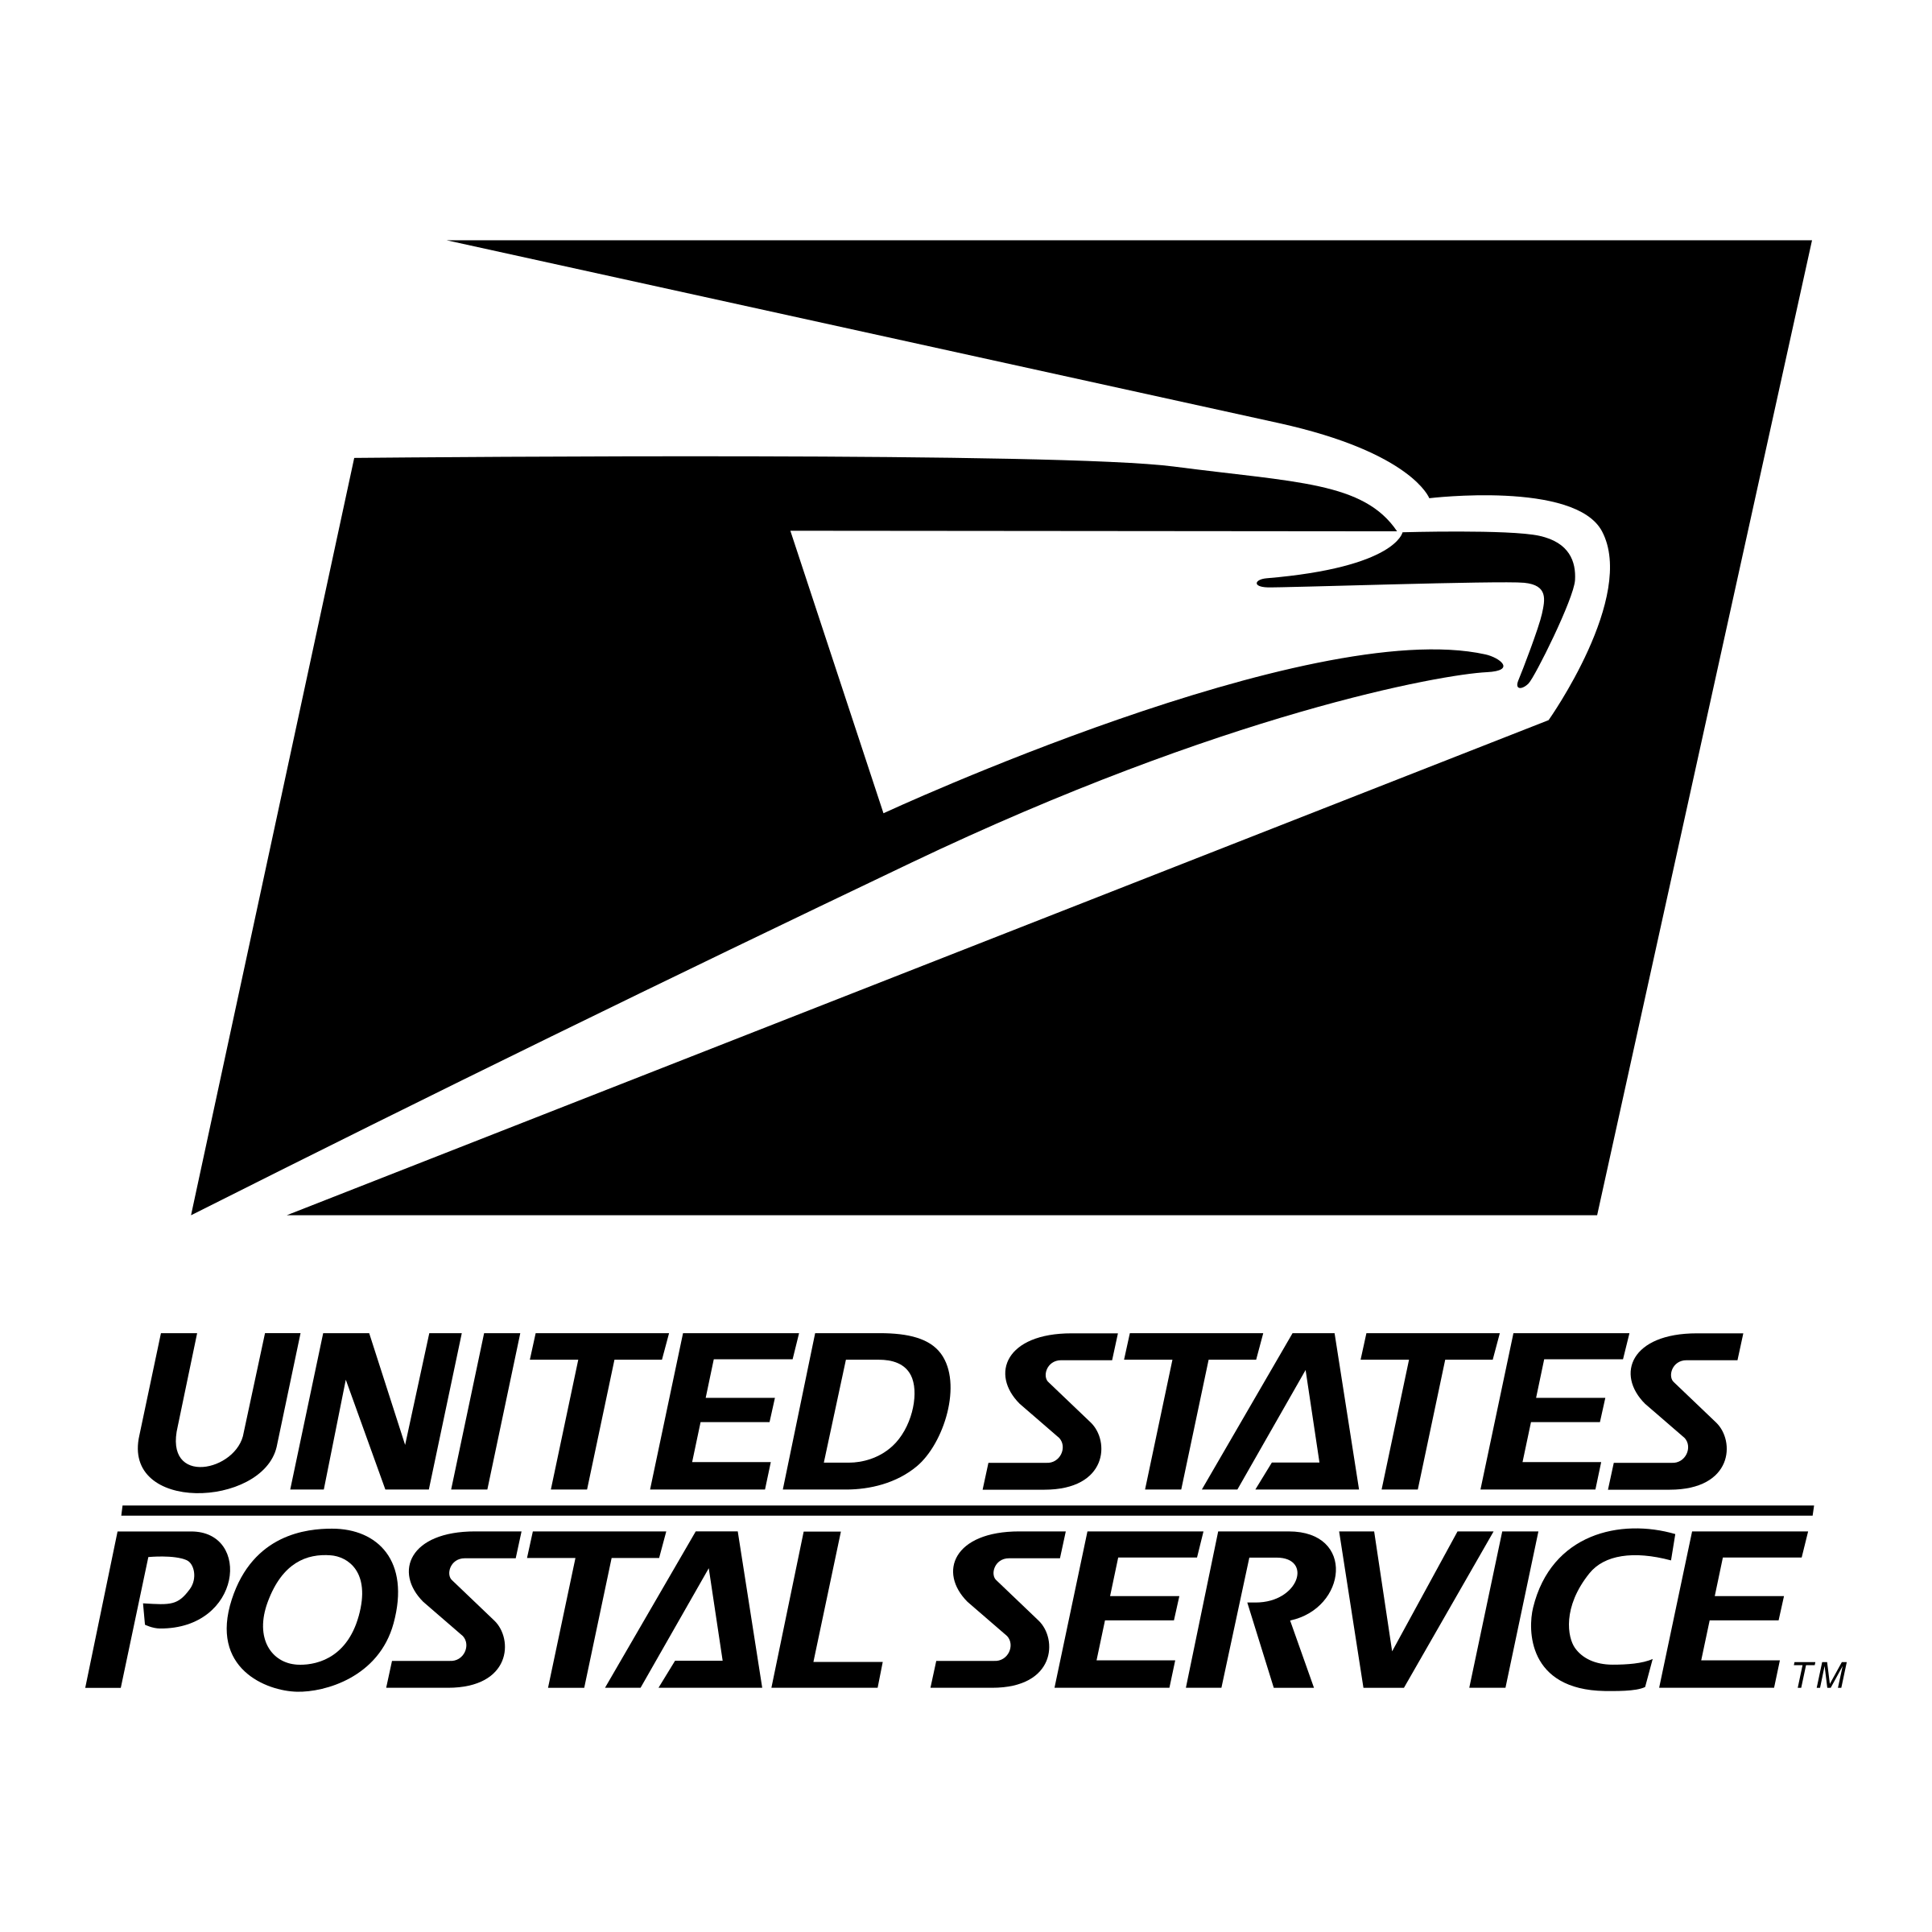 Postal Logo - United States Postal Service Logo PNG Transparent & SVG Vector ...